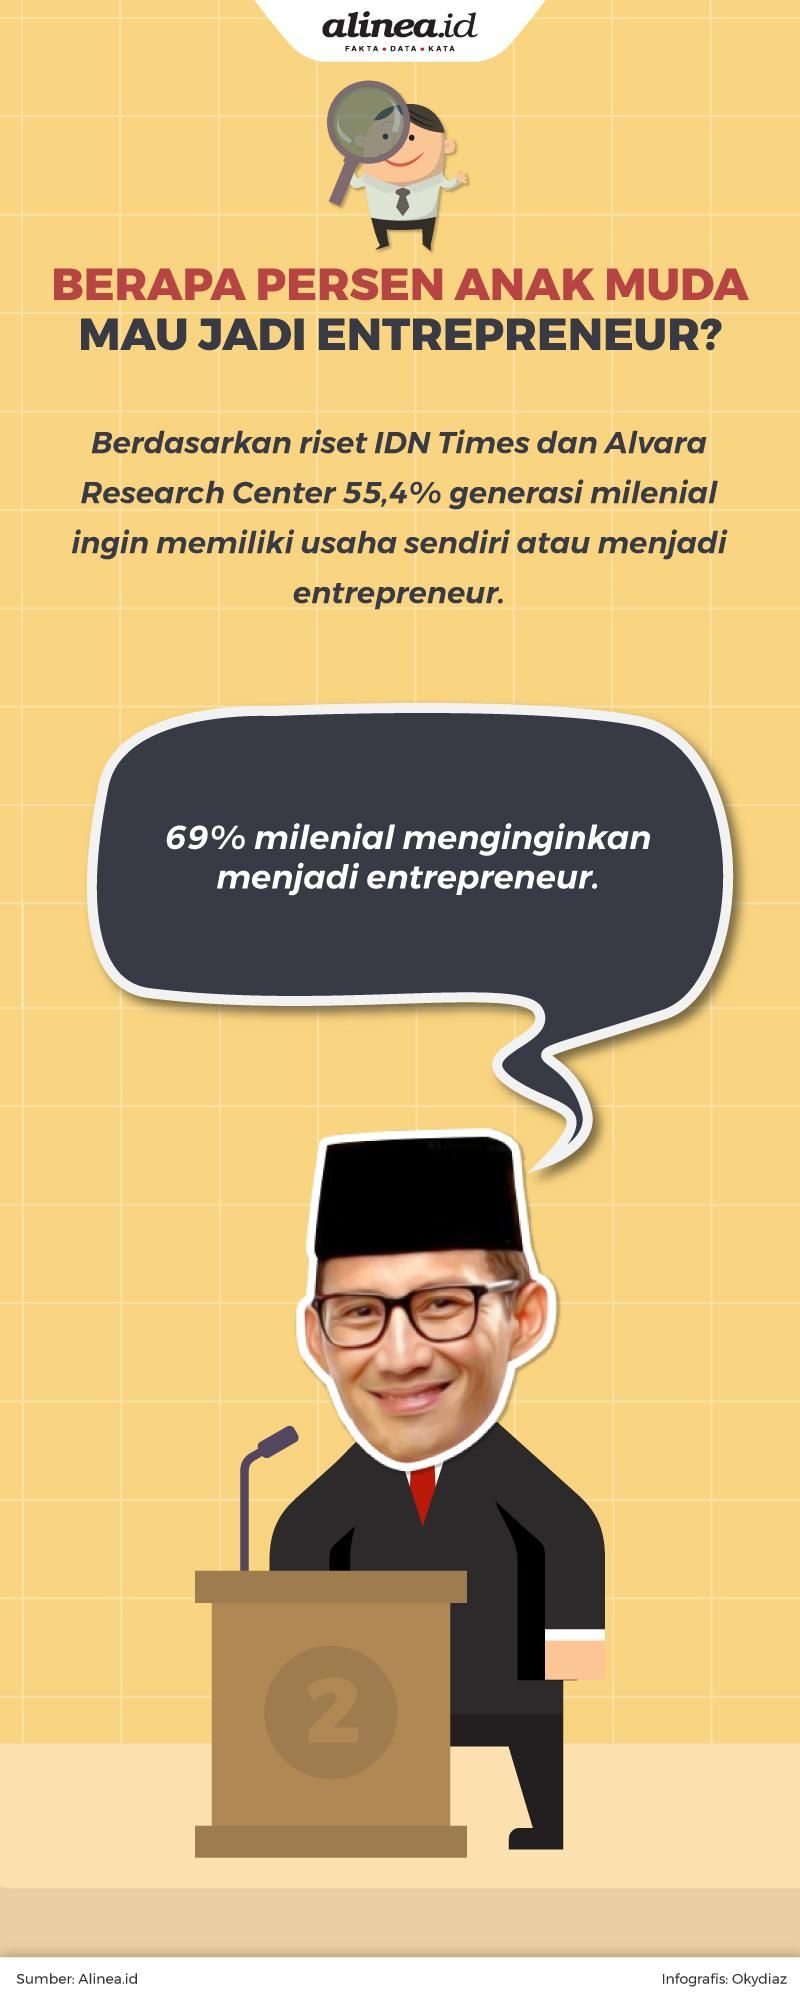 Sandiaga mengatakan anak muda yang ingin jadi entrepreneur 69%.